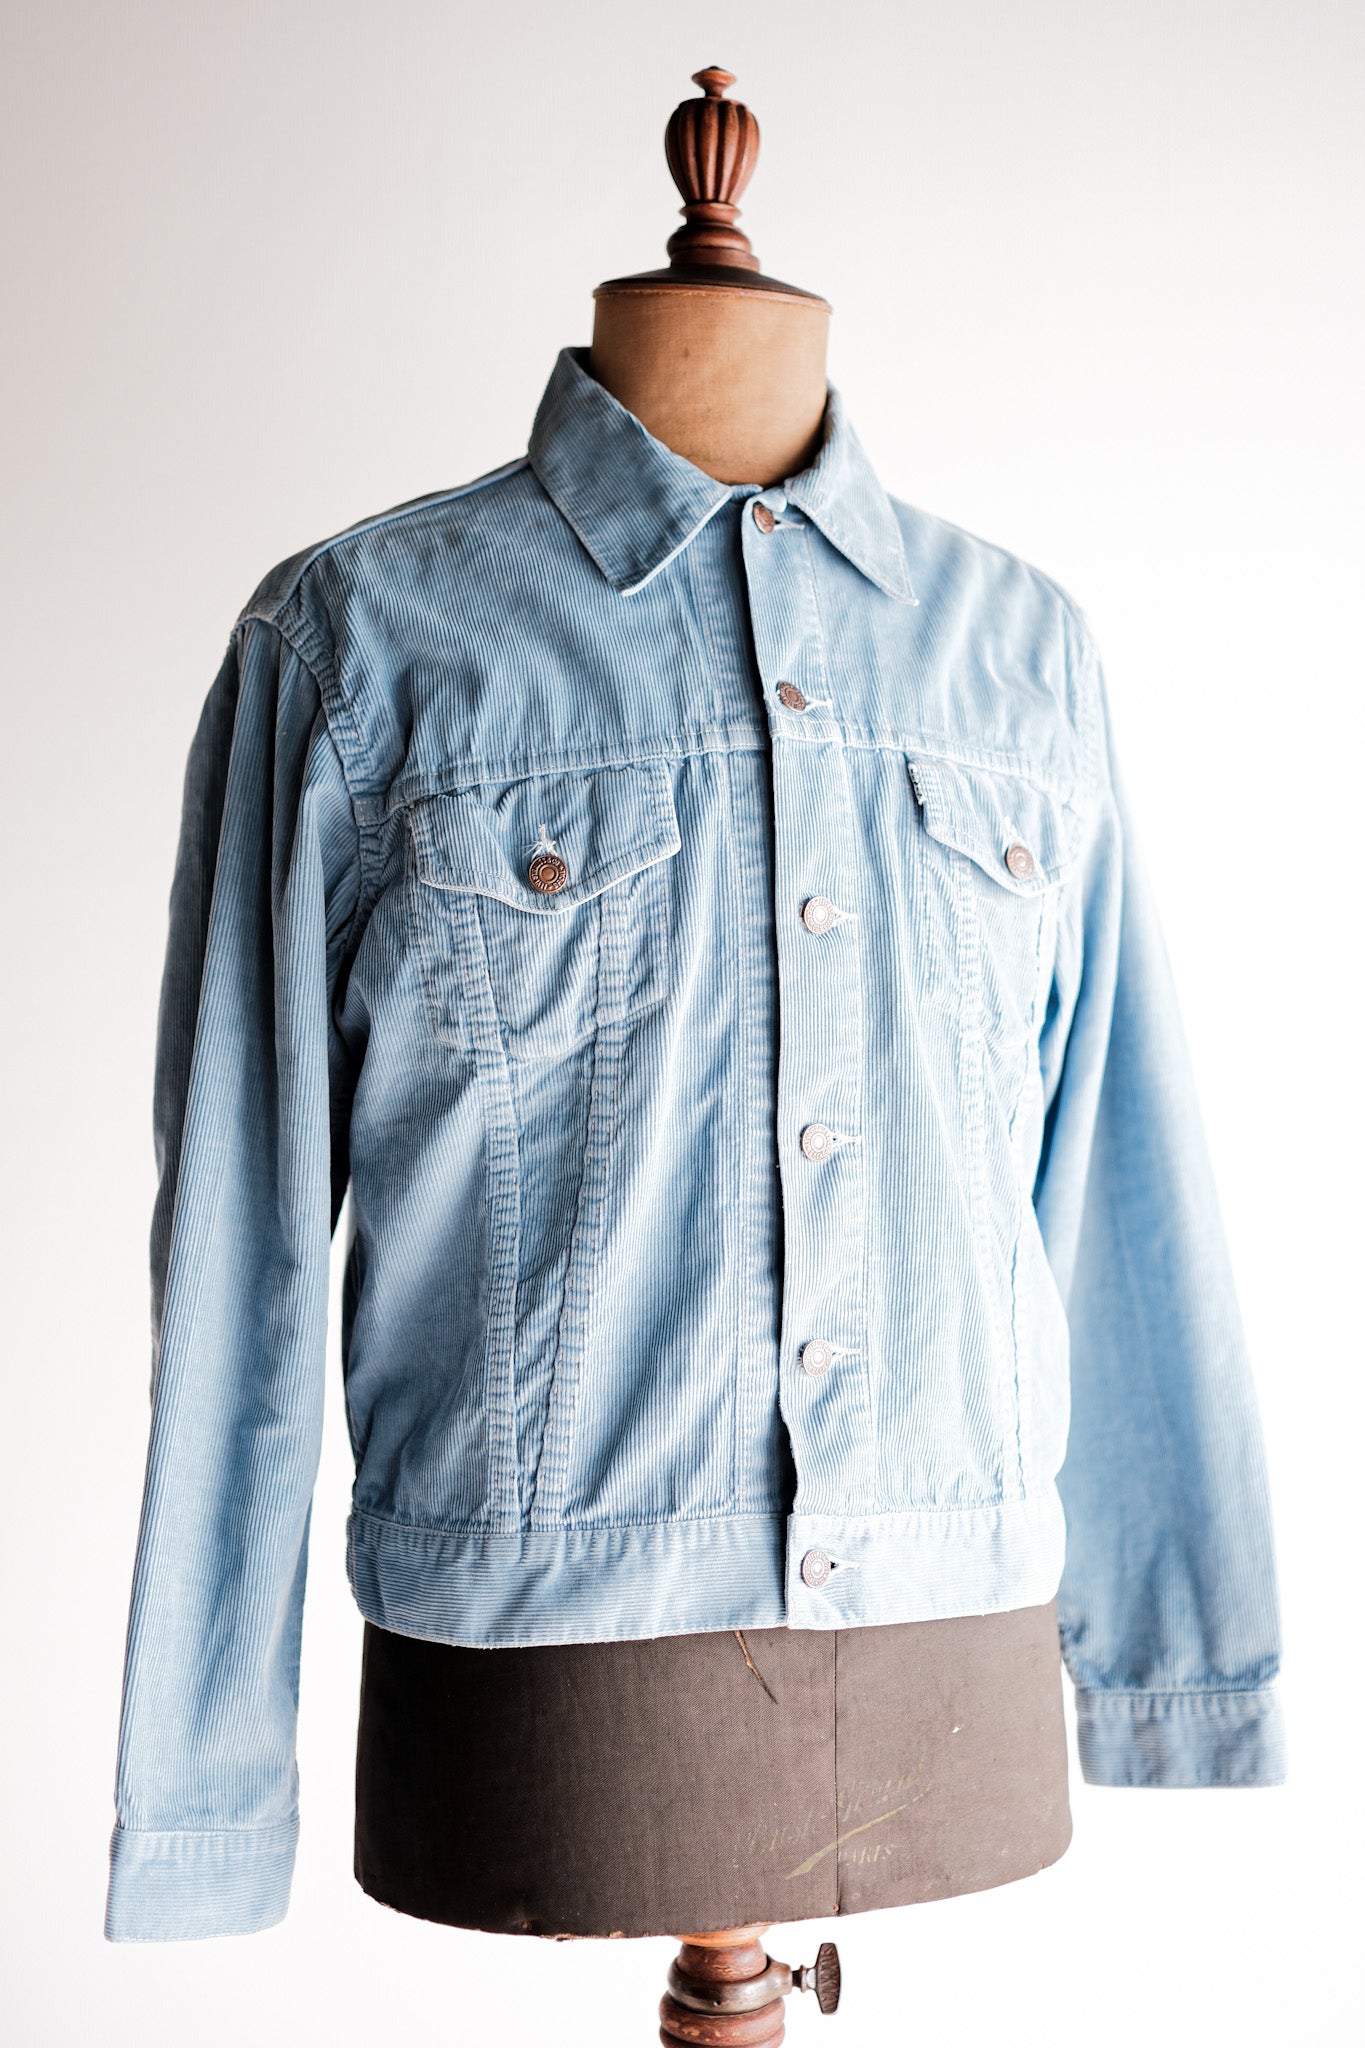 【~60's】Vintage Levi's Slim Fit Corduroy Jacket "Big E"